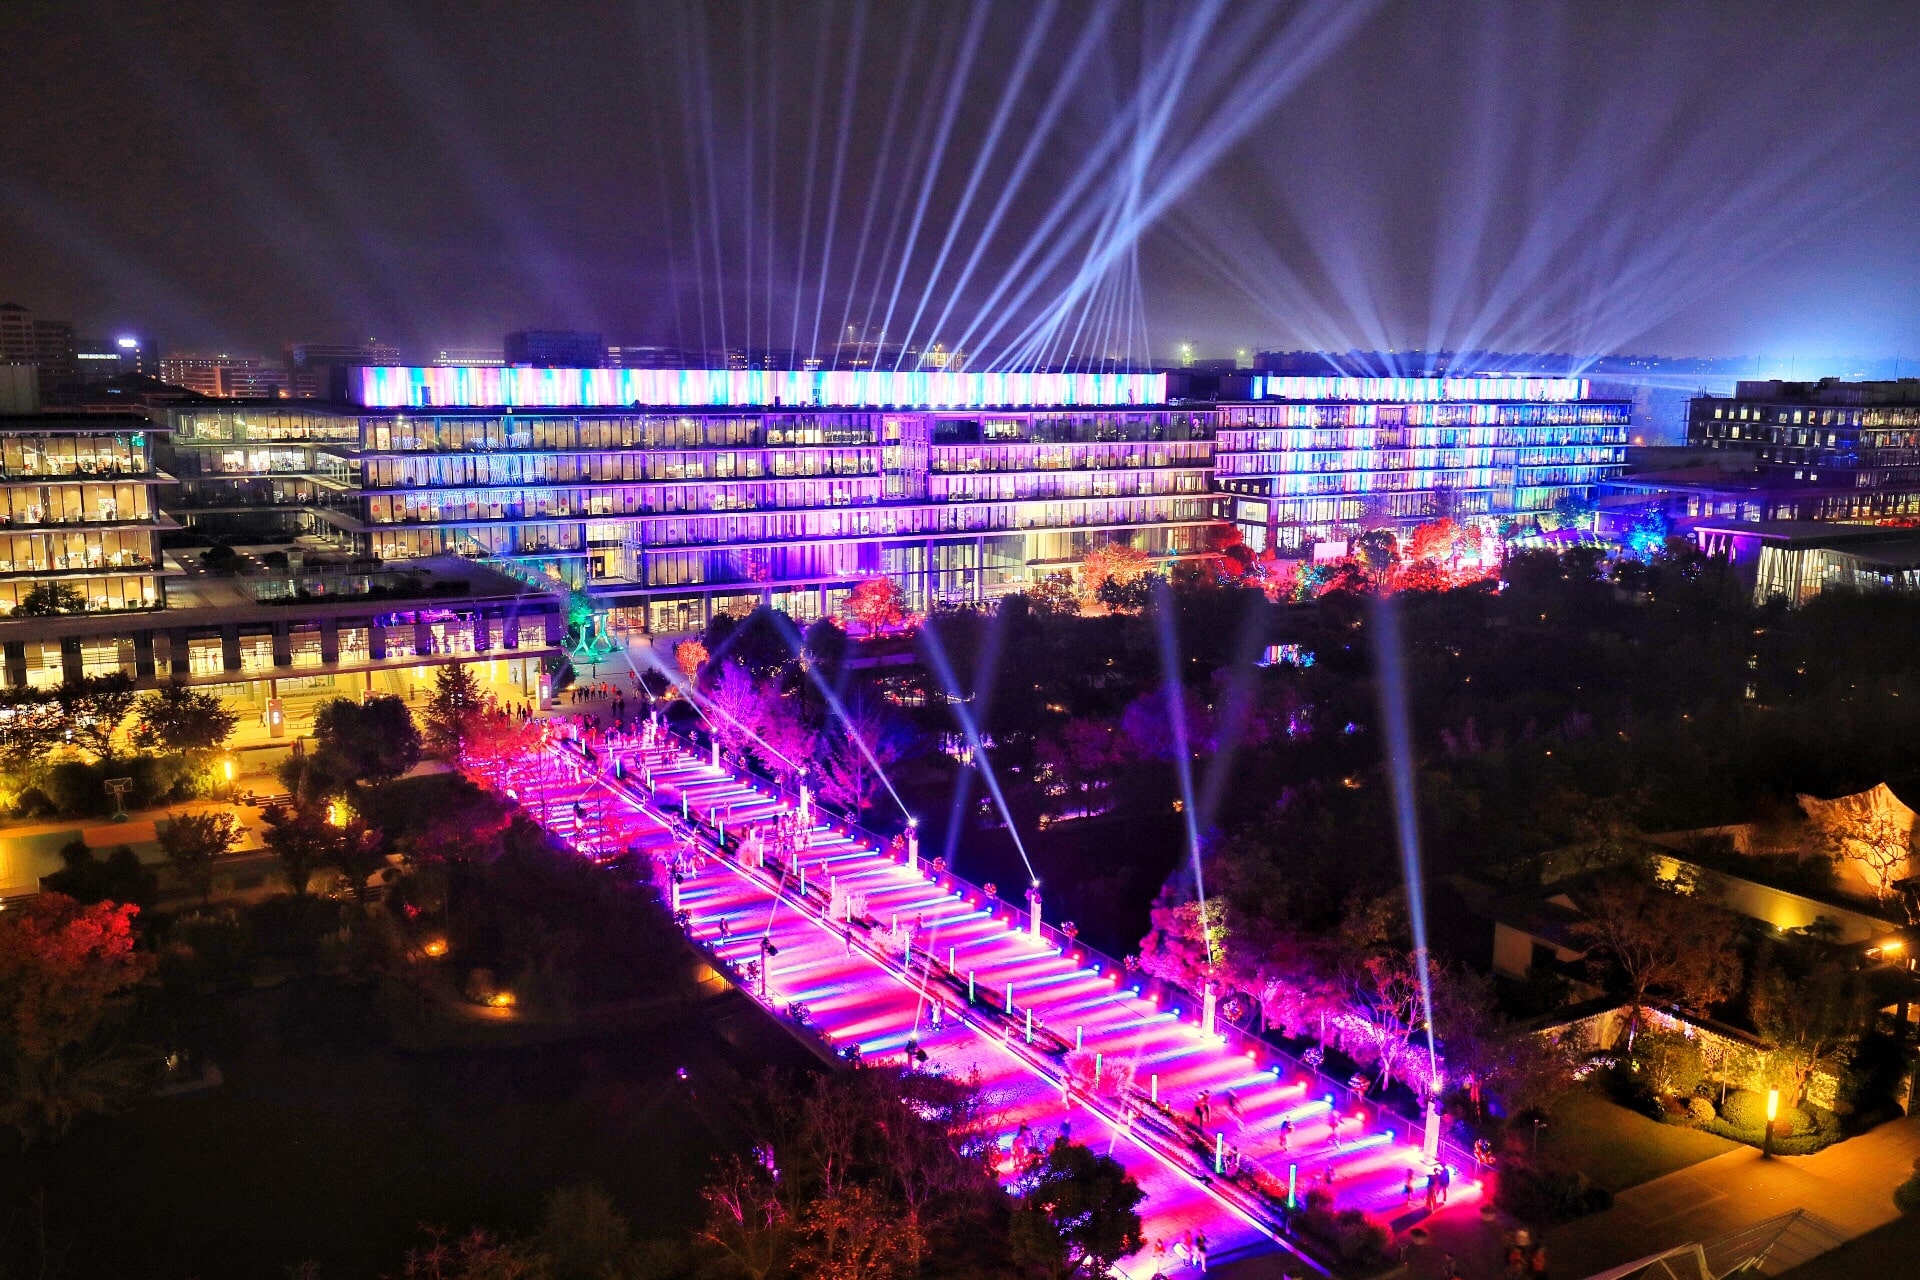 le campus d'Alibaba illuminé en violet la nuit